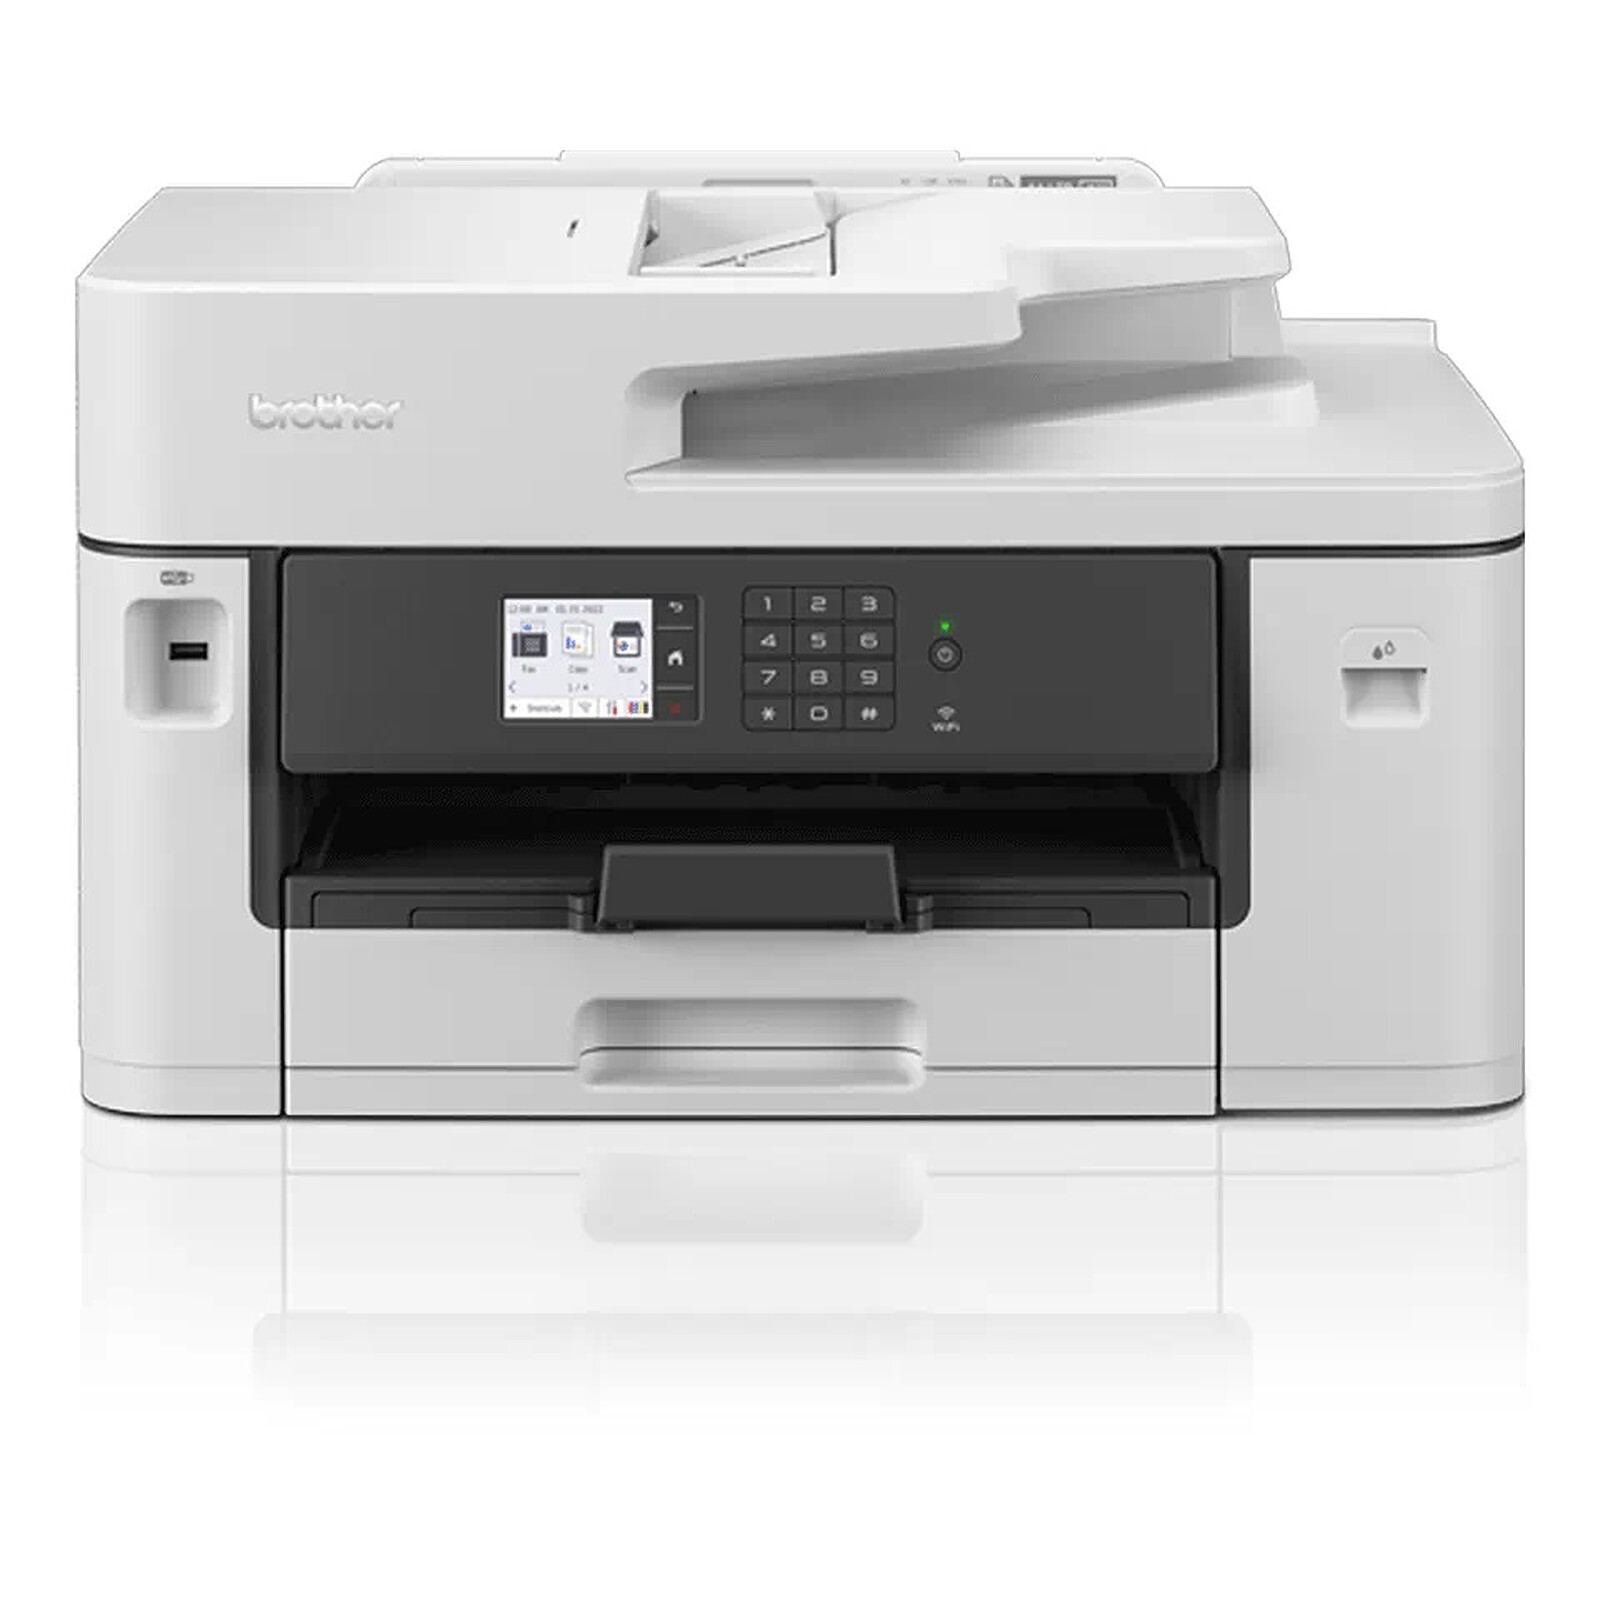 Brother MFC-J5345DW Cartucho de Papel de 250 Hojas, Impresora, escáner, fotocopiadora, fax Impresora multifunción 4 en 1 